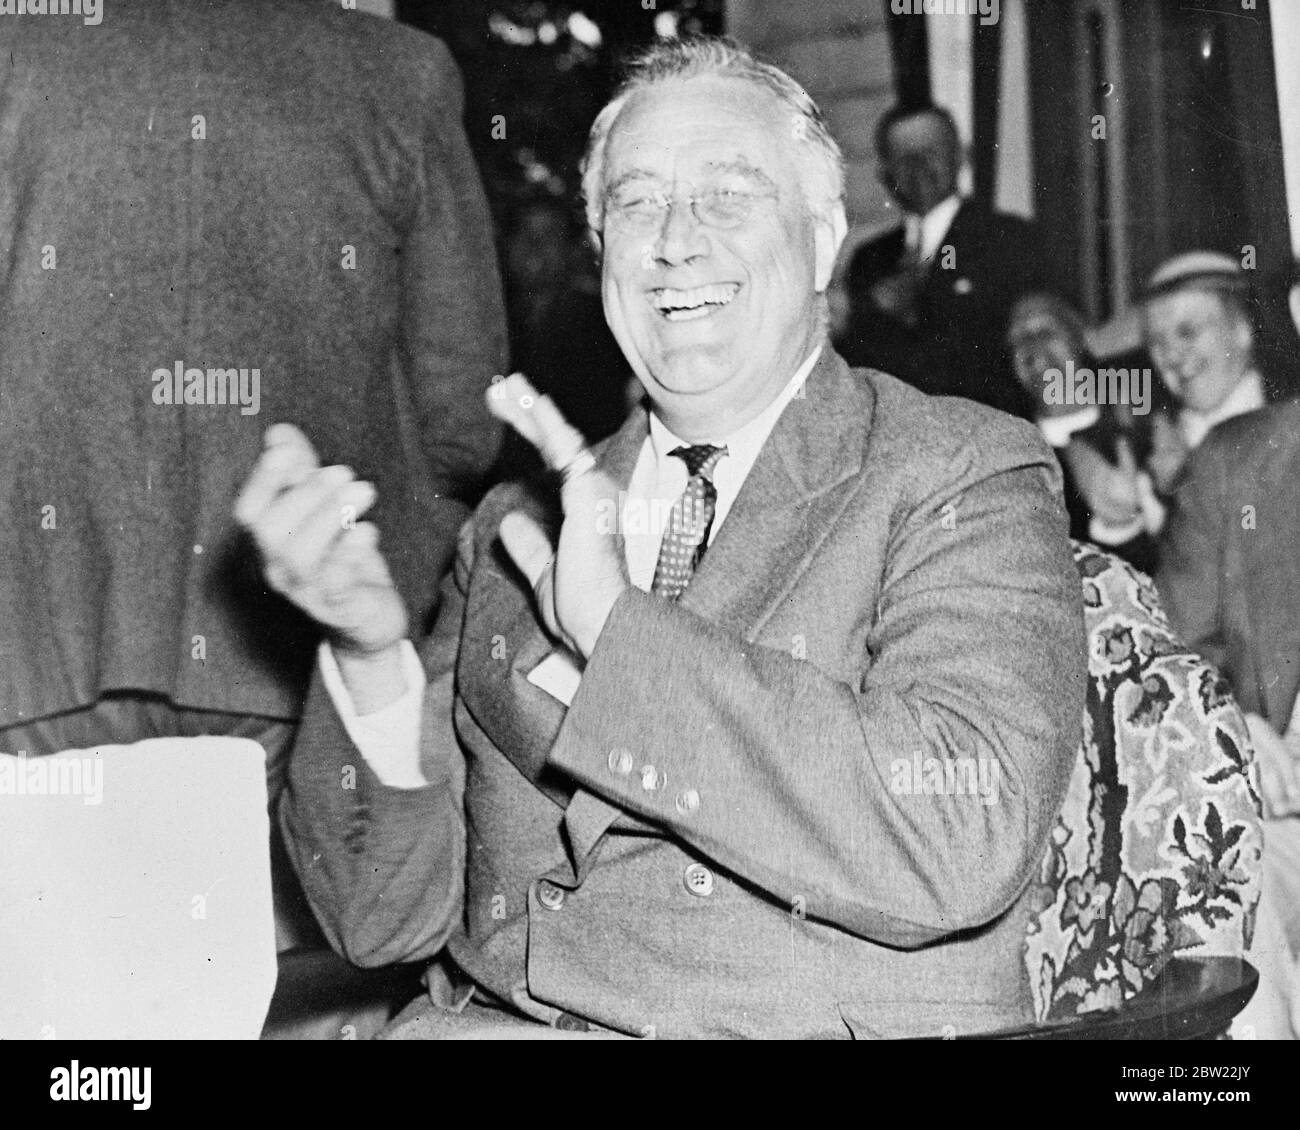 Präsident Franklin Roosevelt, sein Oberster Gerichtshof und New Deal sorgen sich vorübergehend vergessen, lachen herzlich und applaudieren einer seiner aktuellen Beobachtungen, als Moses Smith, ein Pächter-Bauer auf seinem Hyde Park-Anwesen in New York, mit Bernard Baruch, dem Finanzier, besucht wurde. 22. September 1937 Stockfoto